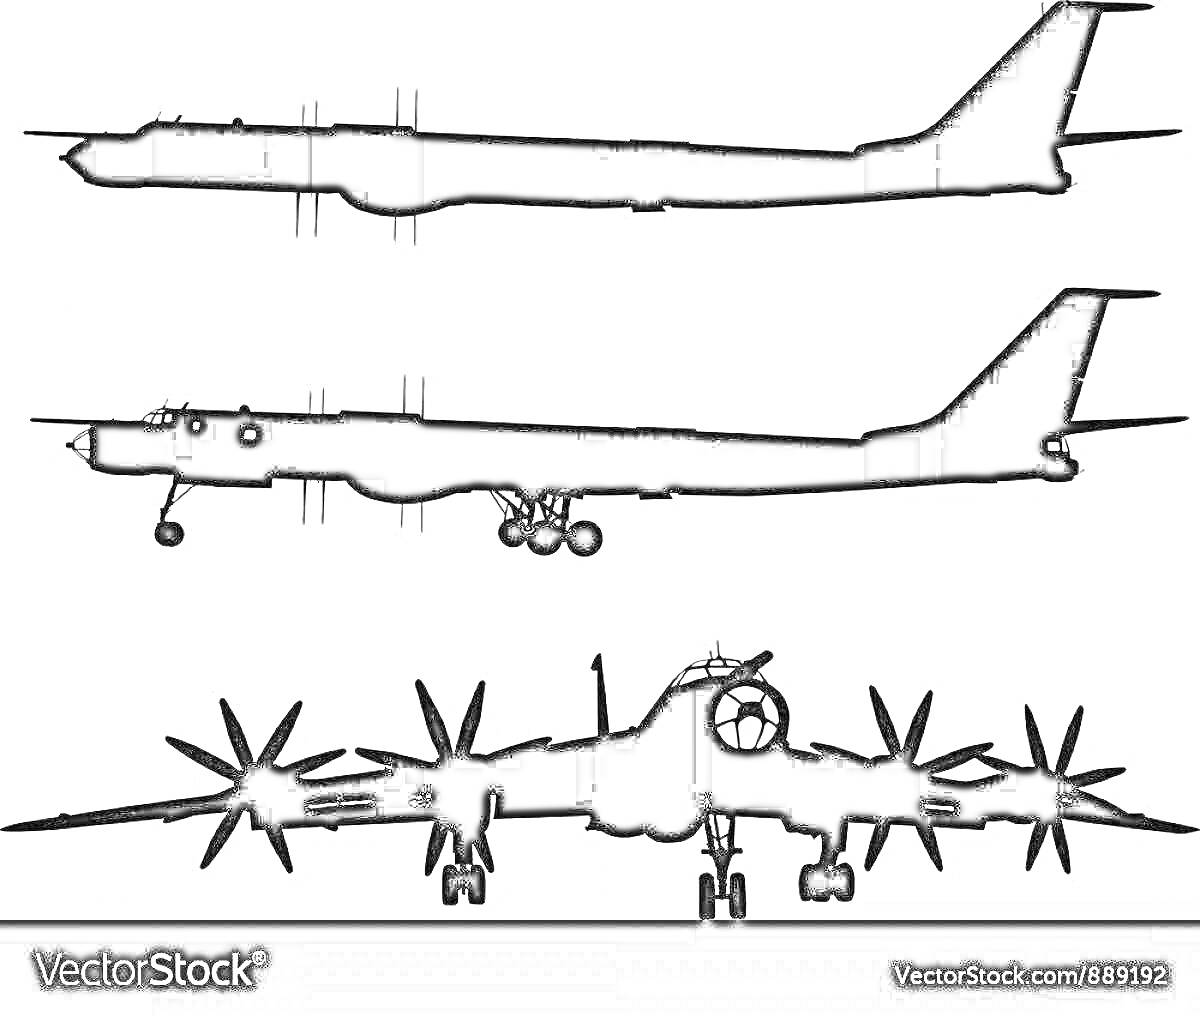 Раскраска Силуэт российского стратегического бомбардировщика Ту-95 в трёх проекциях: вид сверху, сбоку и спереди.